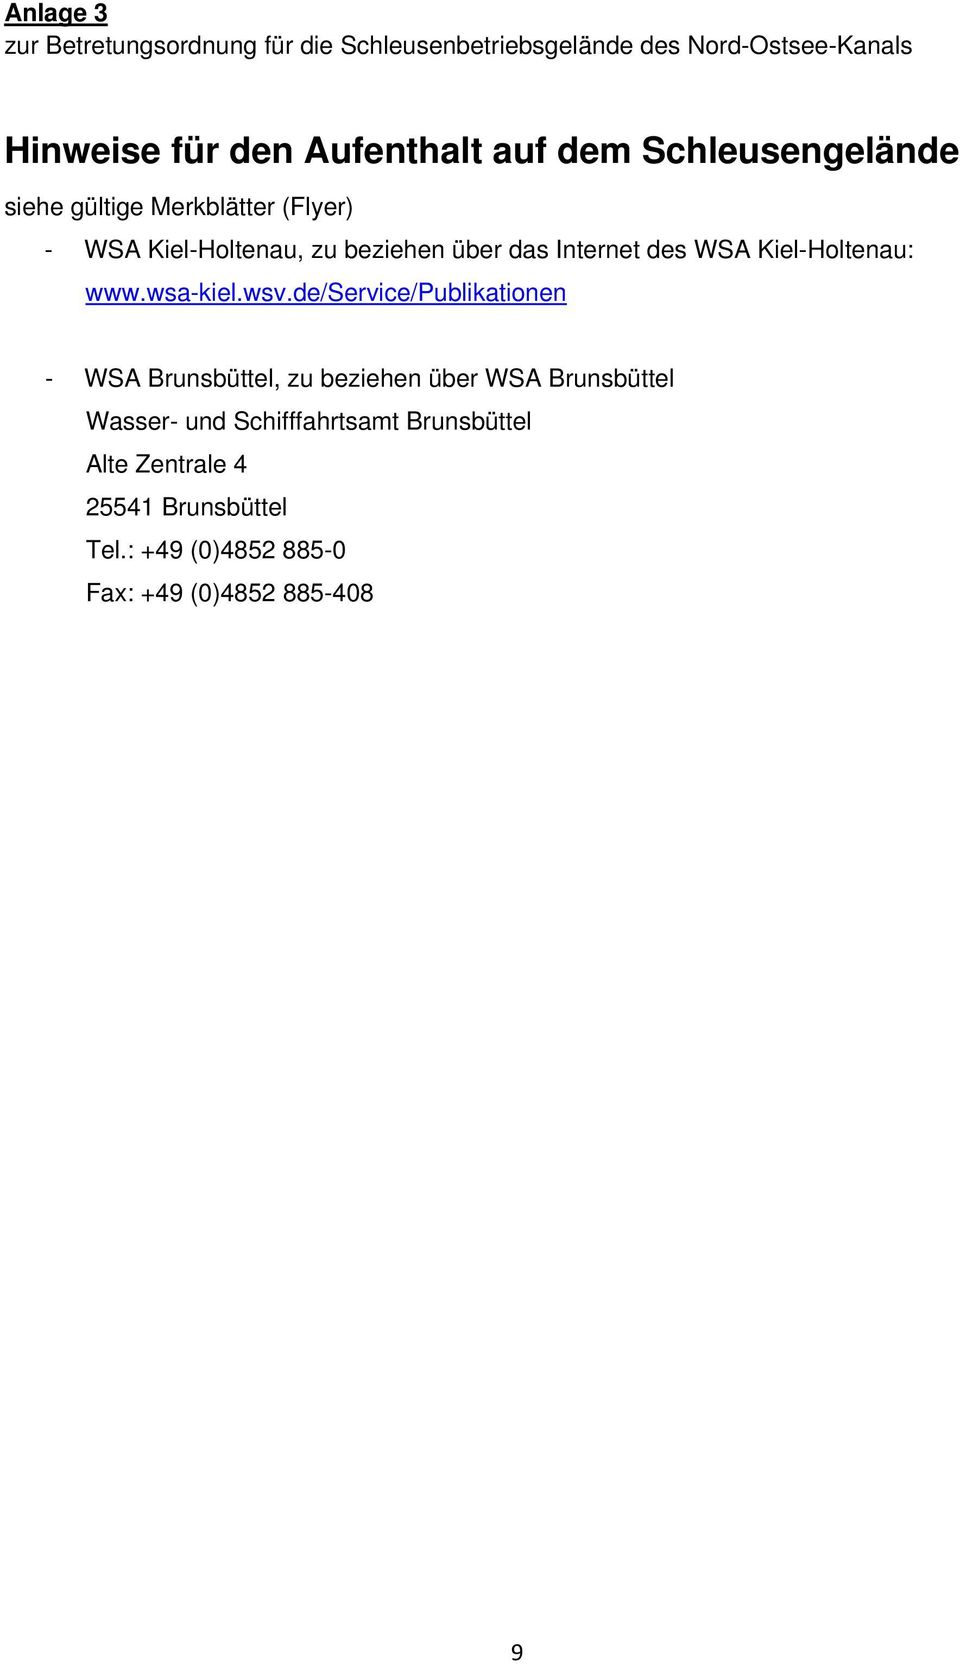 WSA Kiel-Holtenau: www.wsa-kiel.wsv.